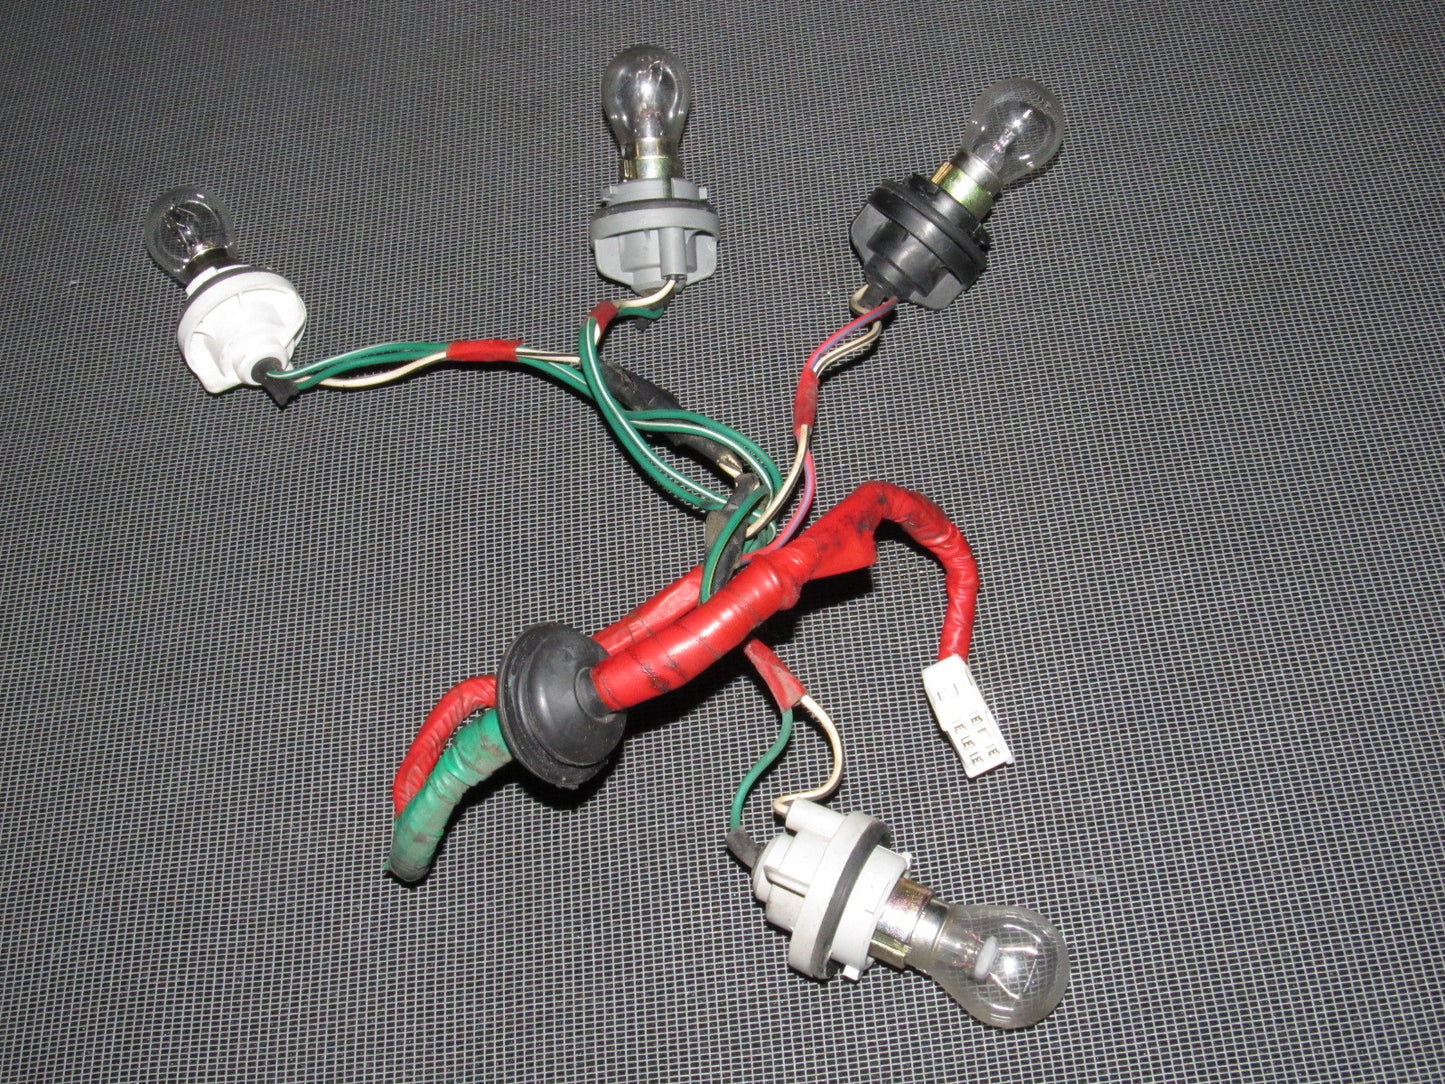 94 95 96 97 98 99 Toyota Celica Covertible Tail Light Bulb Socket Left